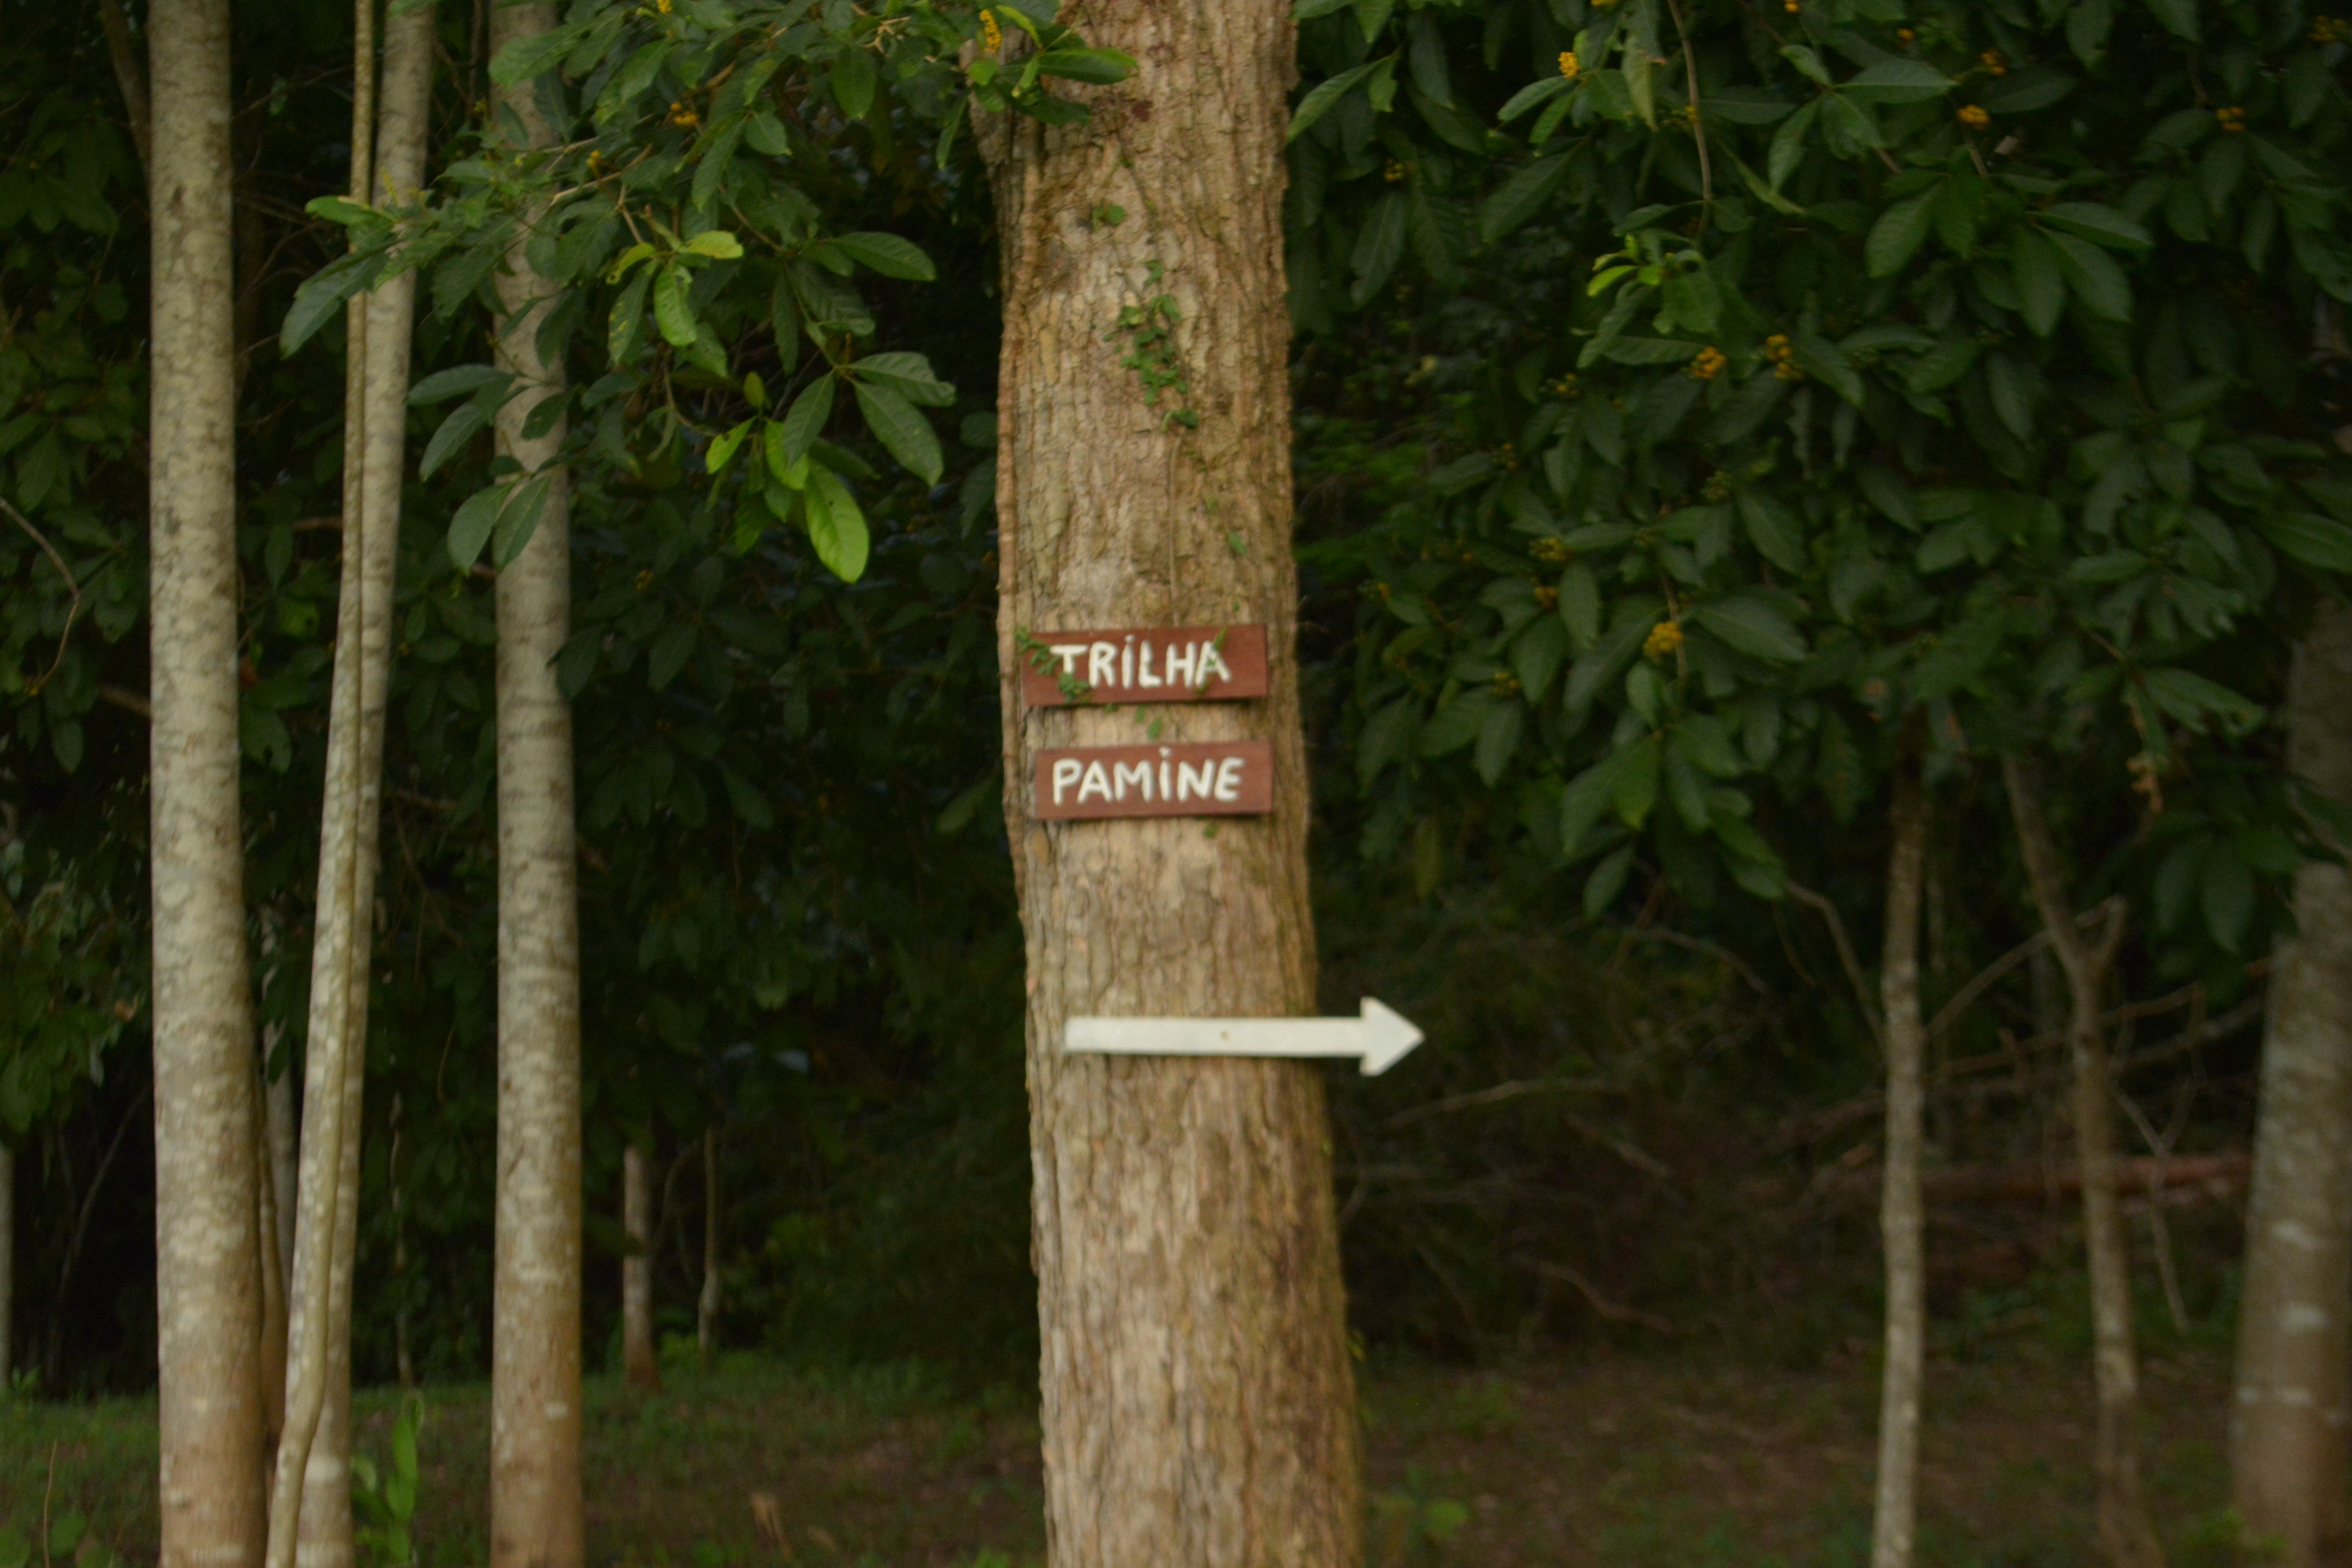 Roteiro turístico inclui trilhas na floresta